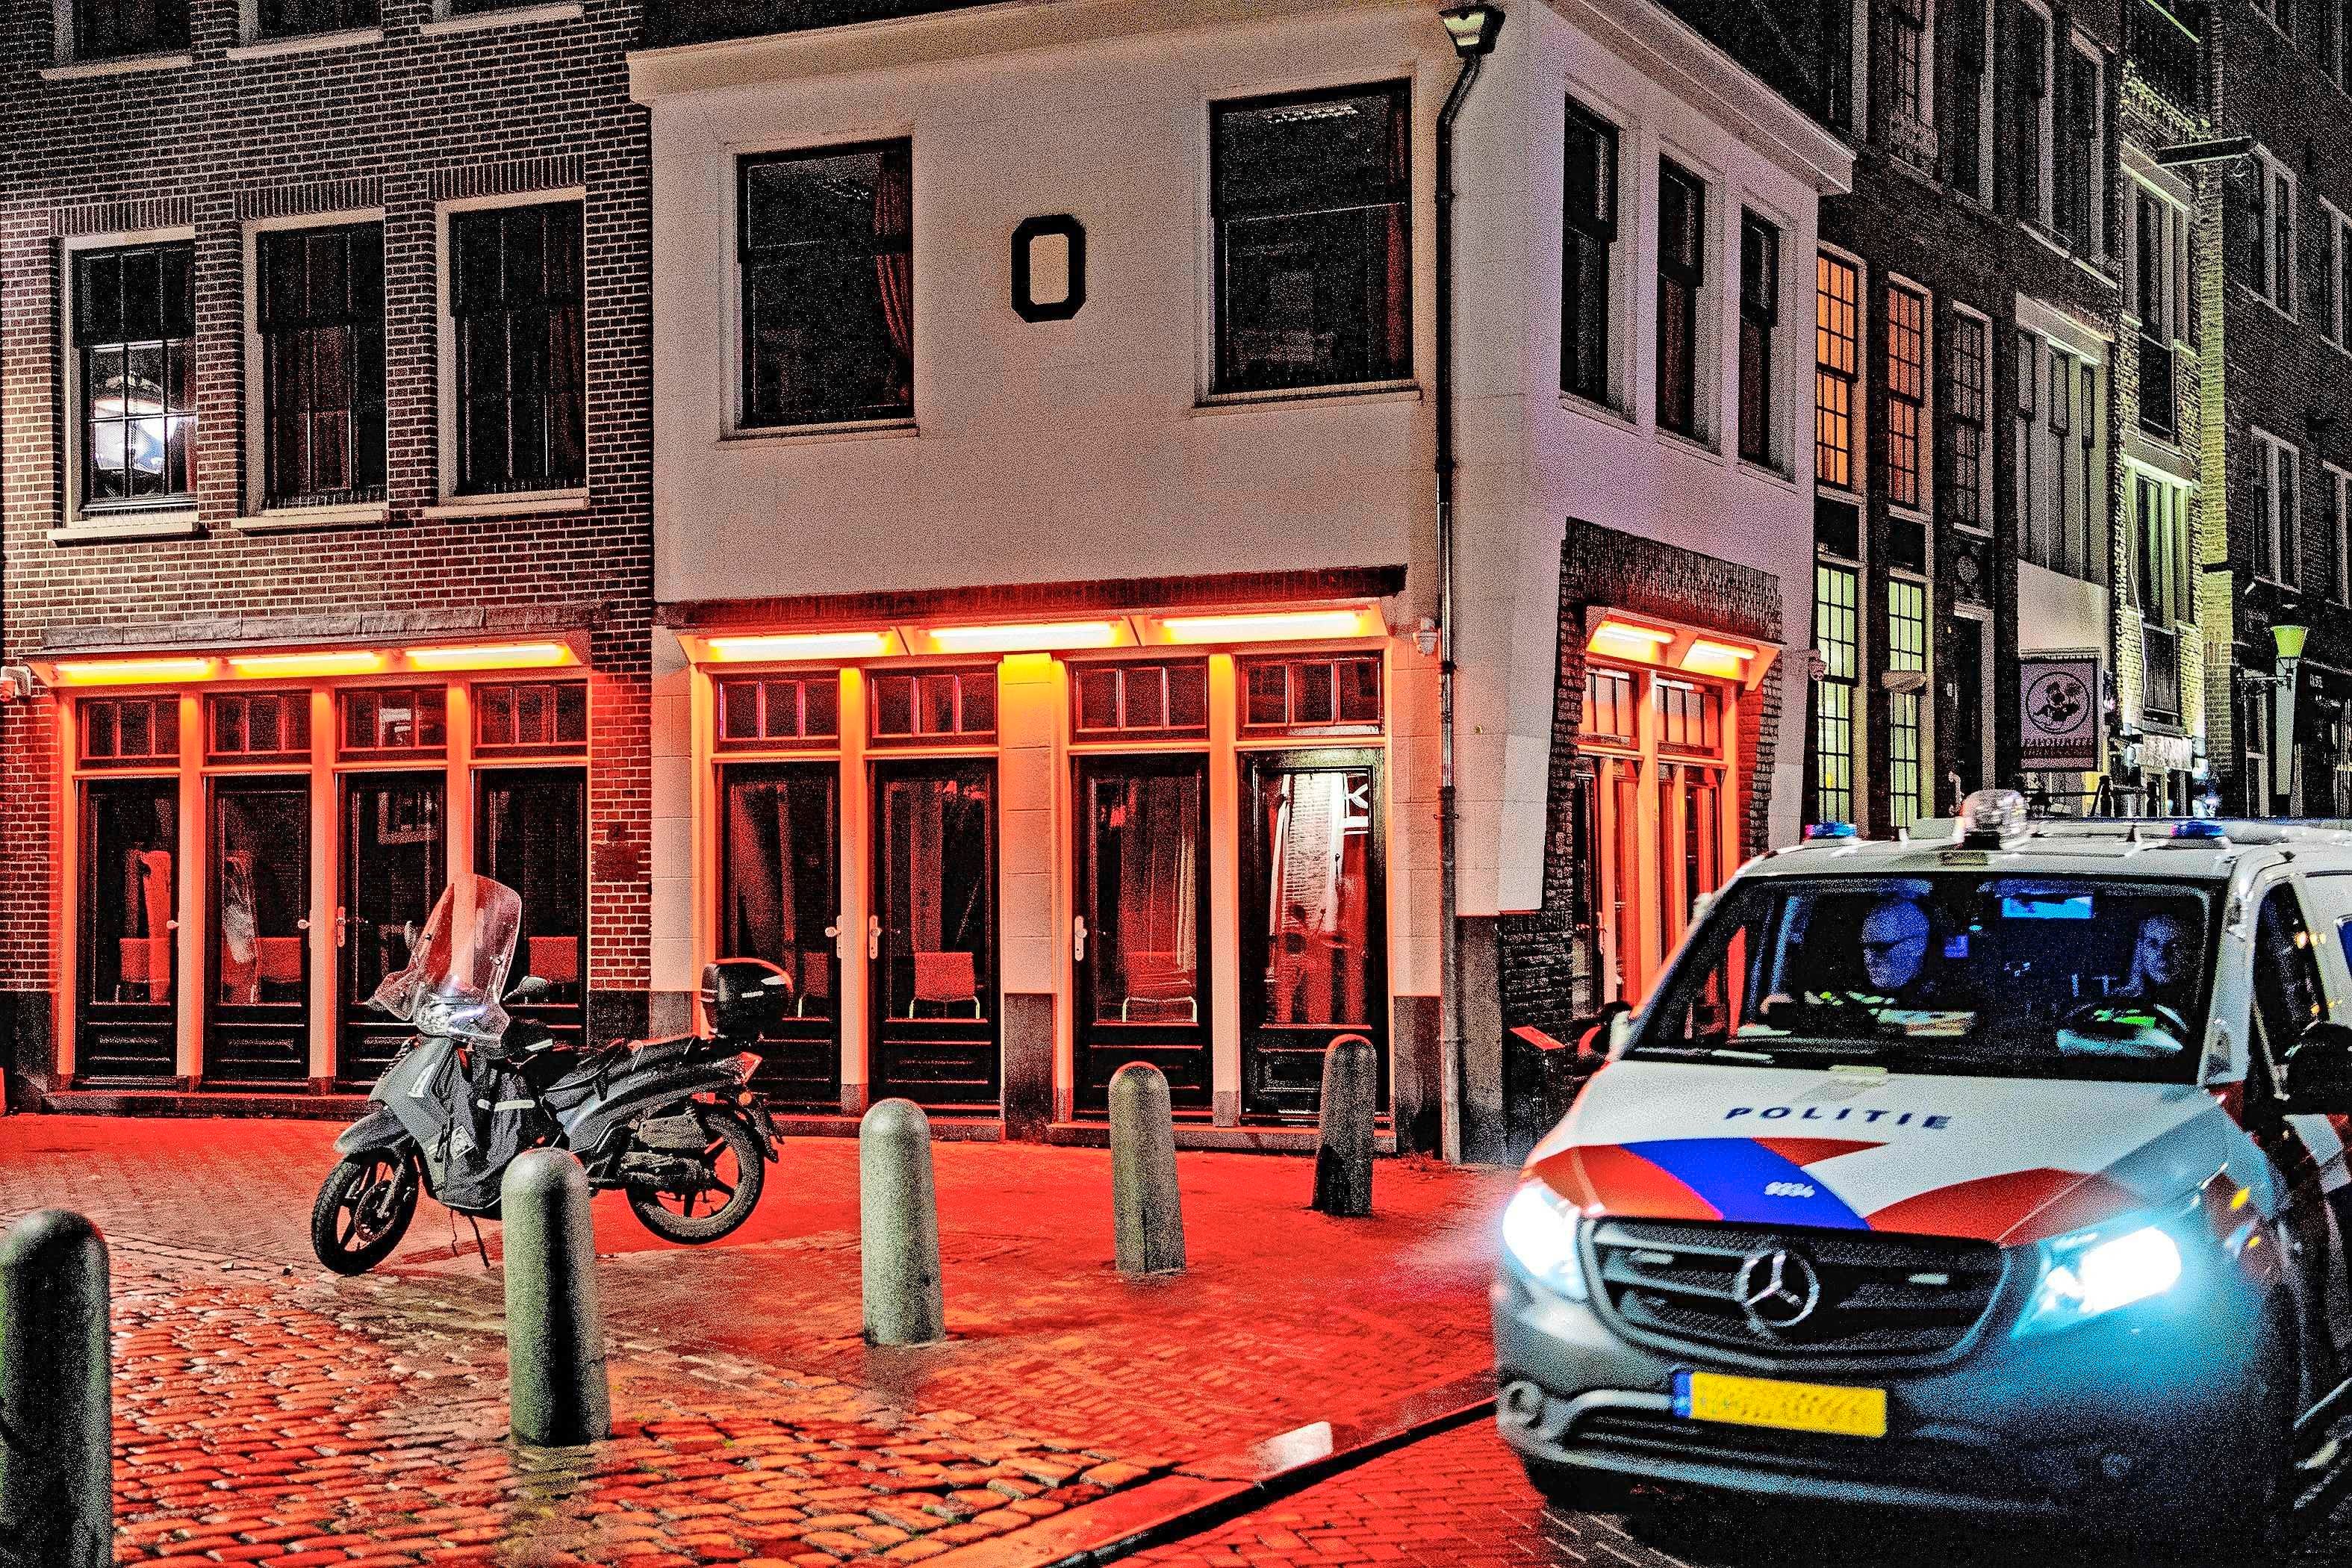 Nepagenten gijzelen sekswerkers Ze hebben 9000 euro gestolen Binnenland Telegraaf.nl afbeelding